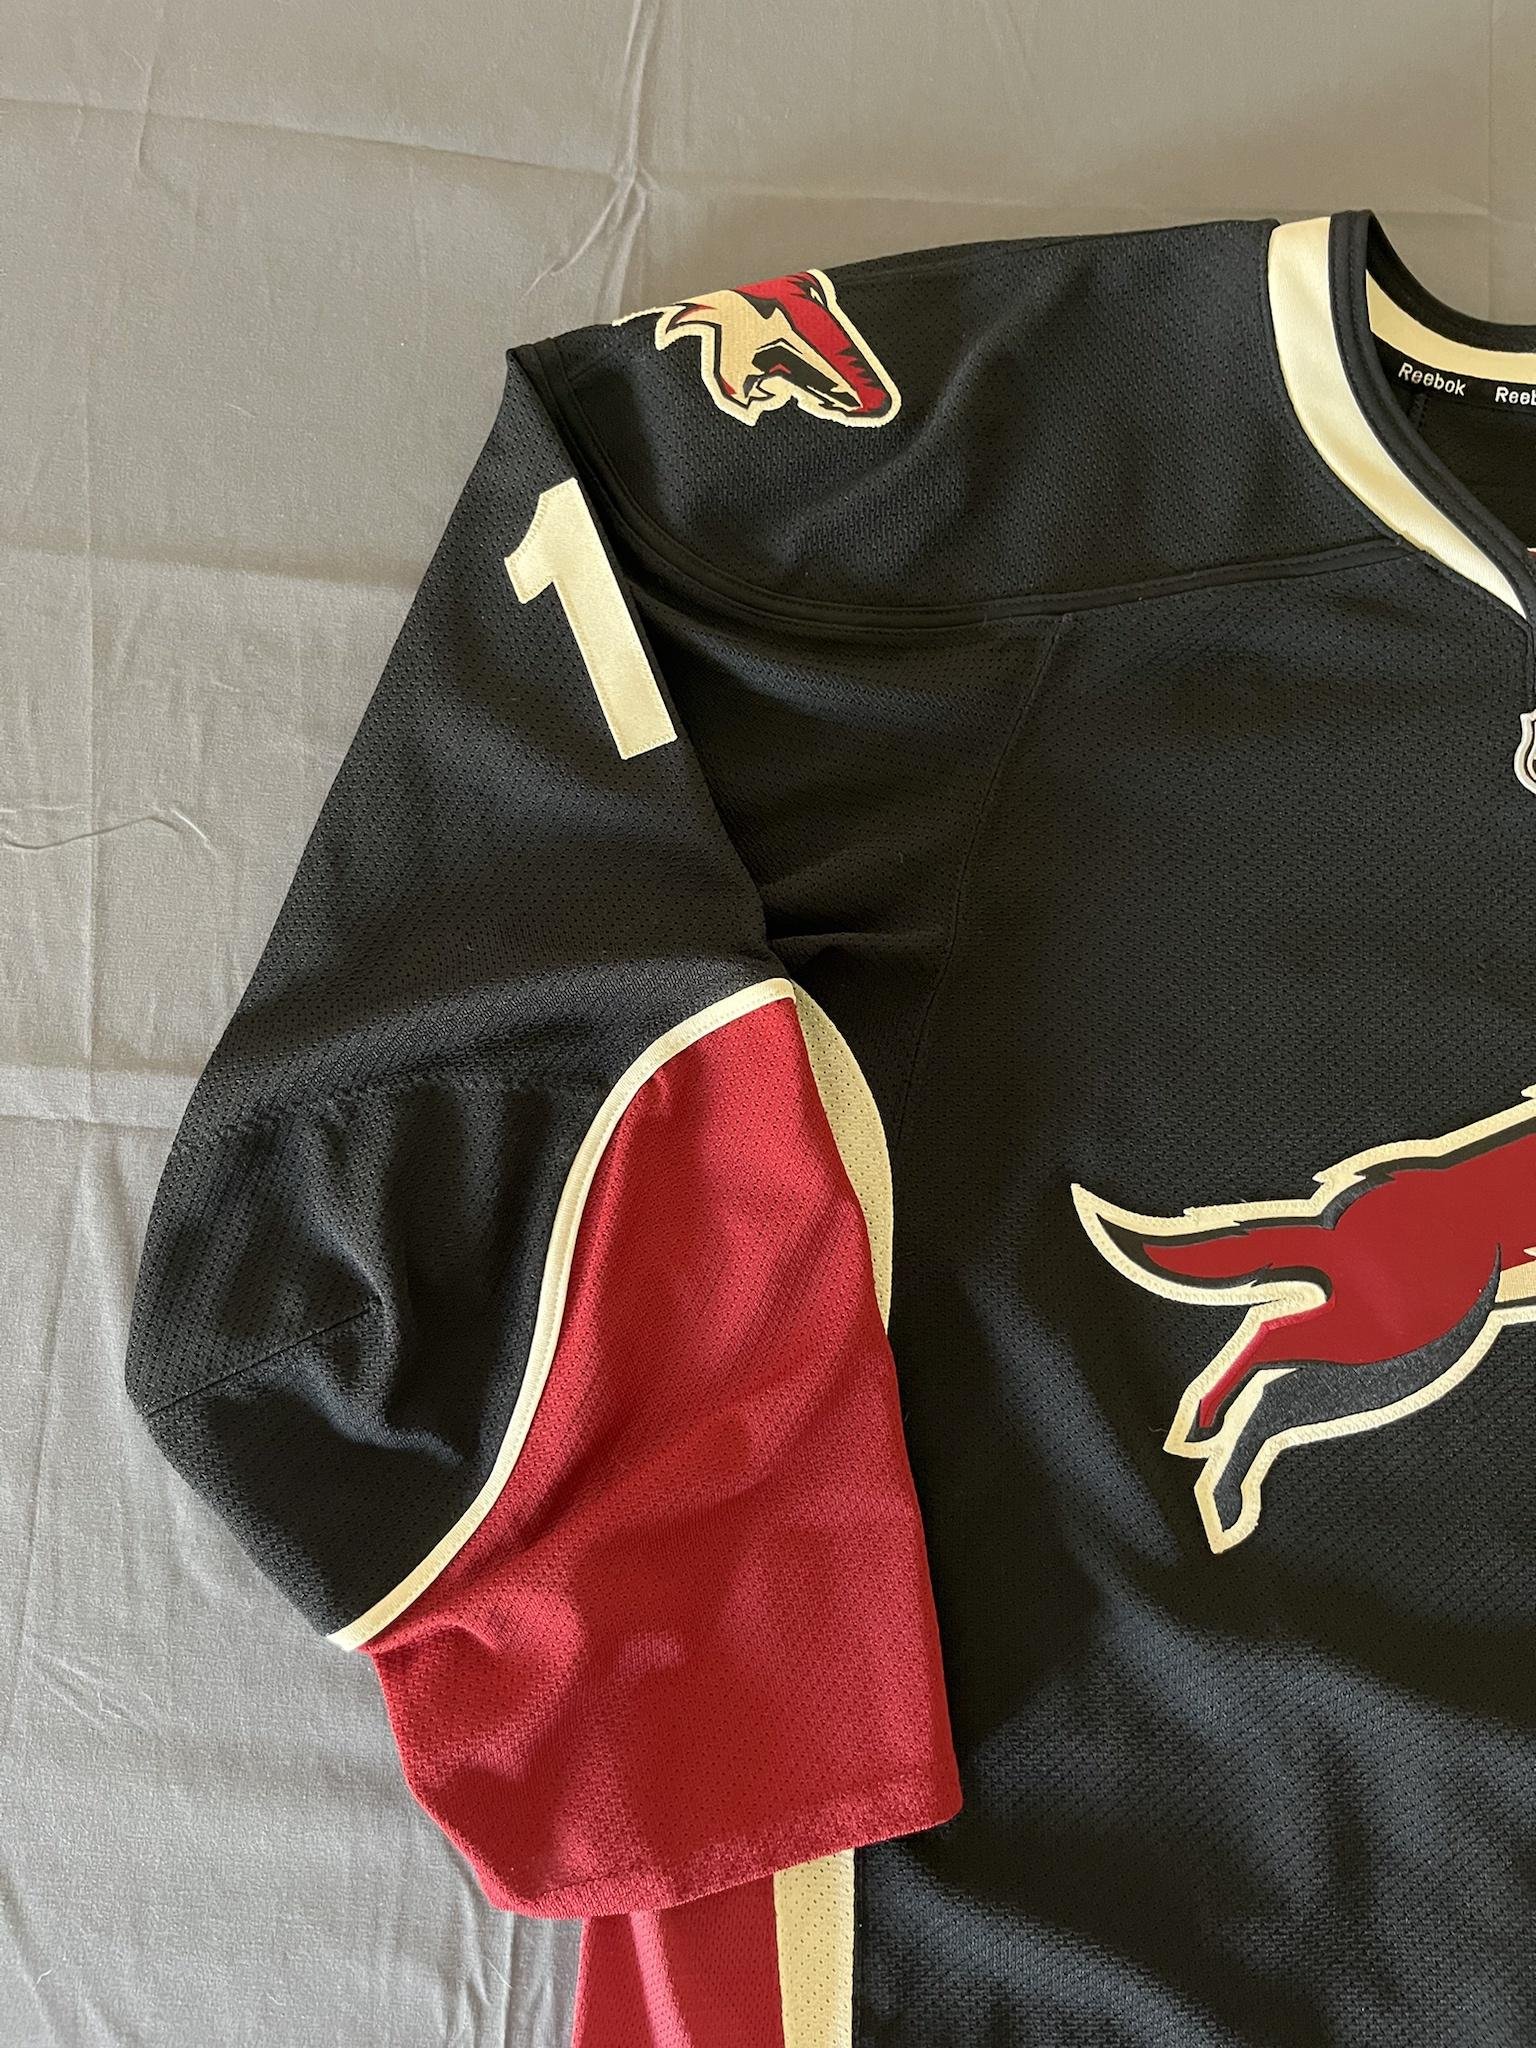 Phoenix Coyotes NHL Fan Jerseys for sale